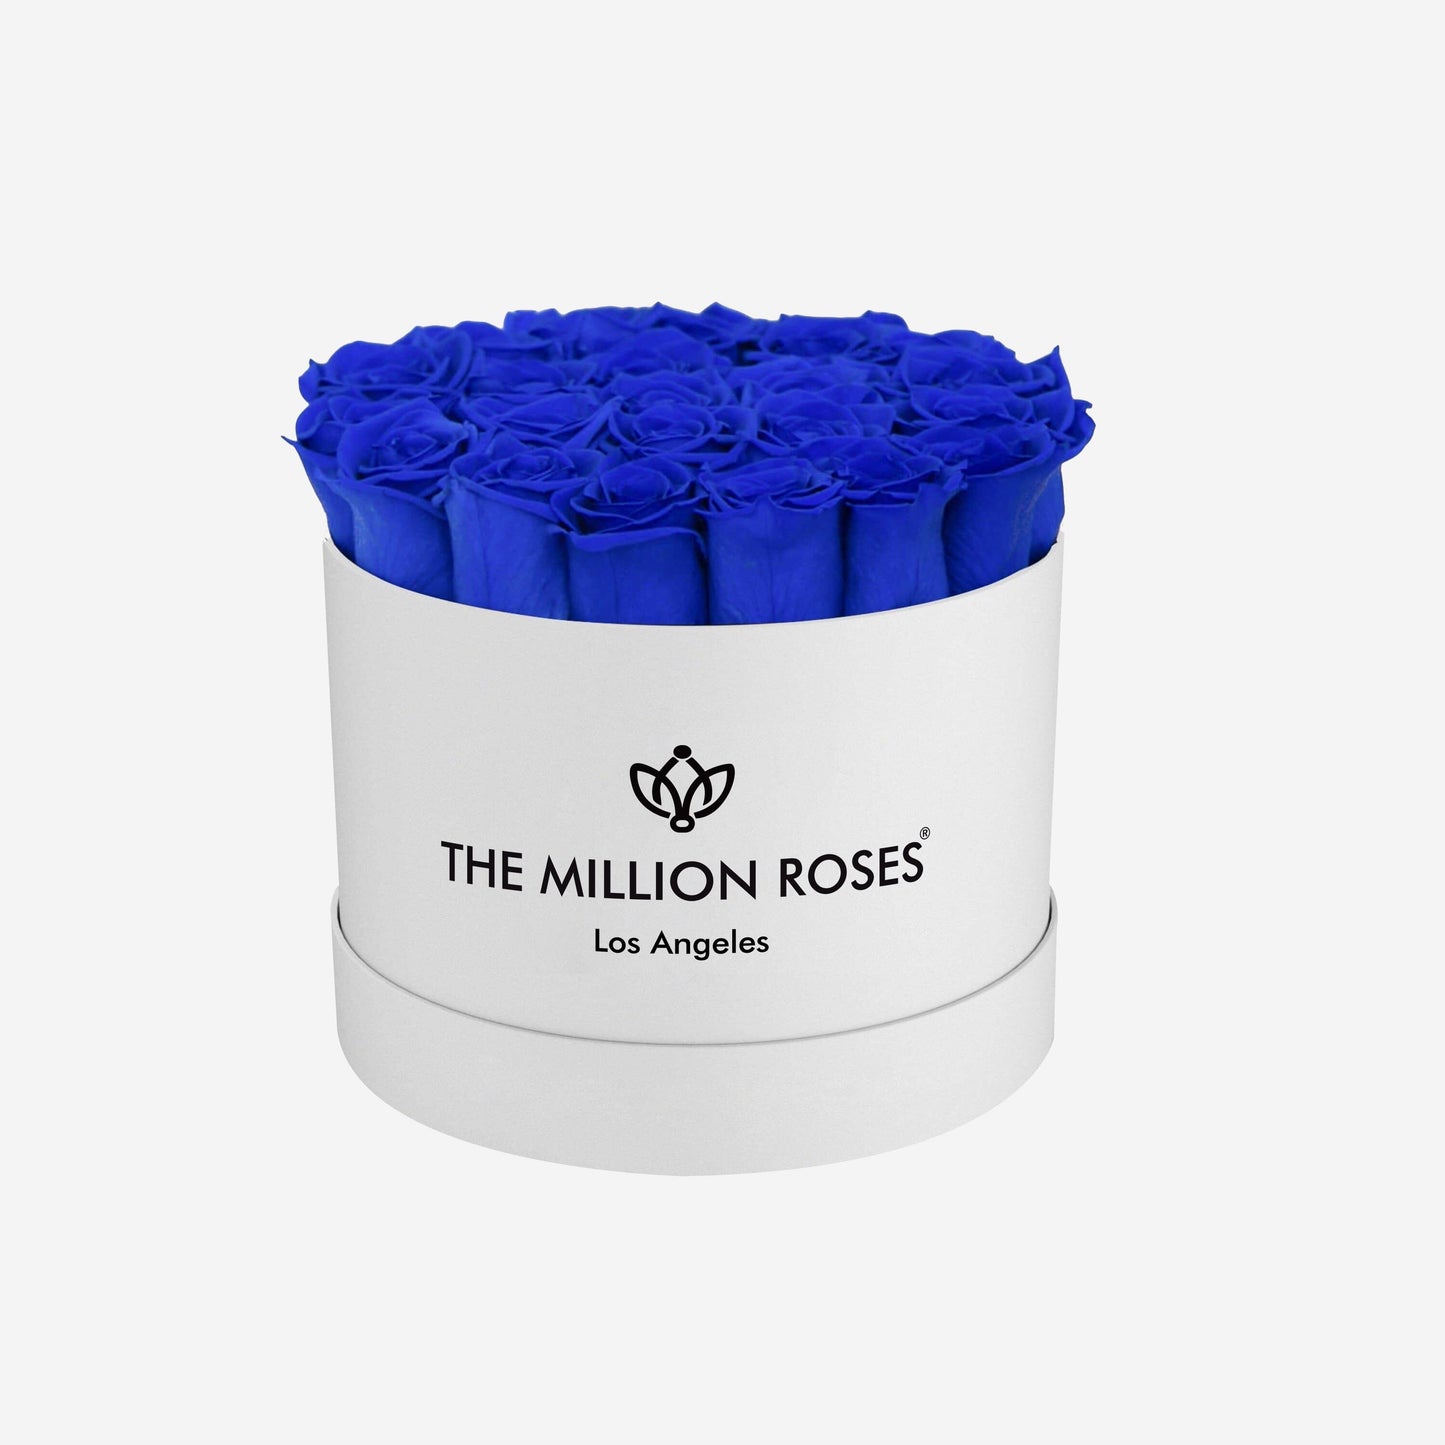 Classic White Box | Royal Blue Roses - The Million Roses